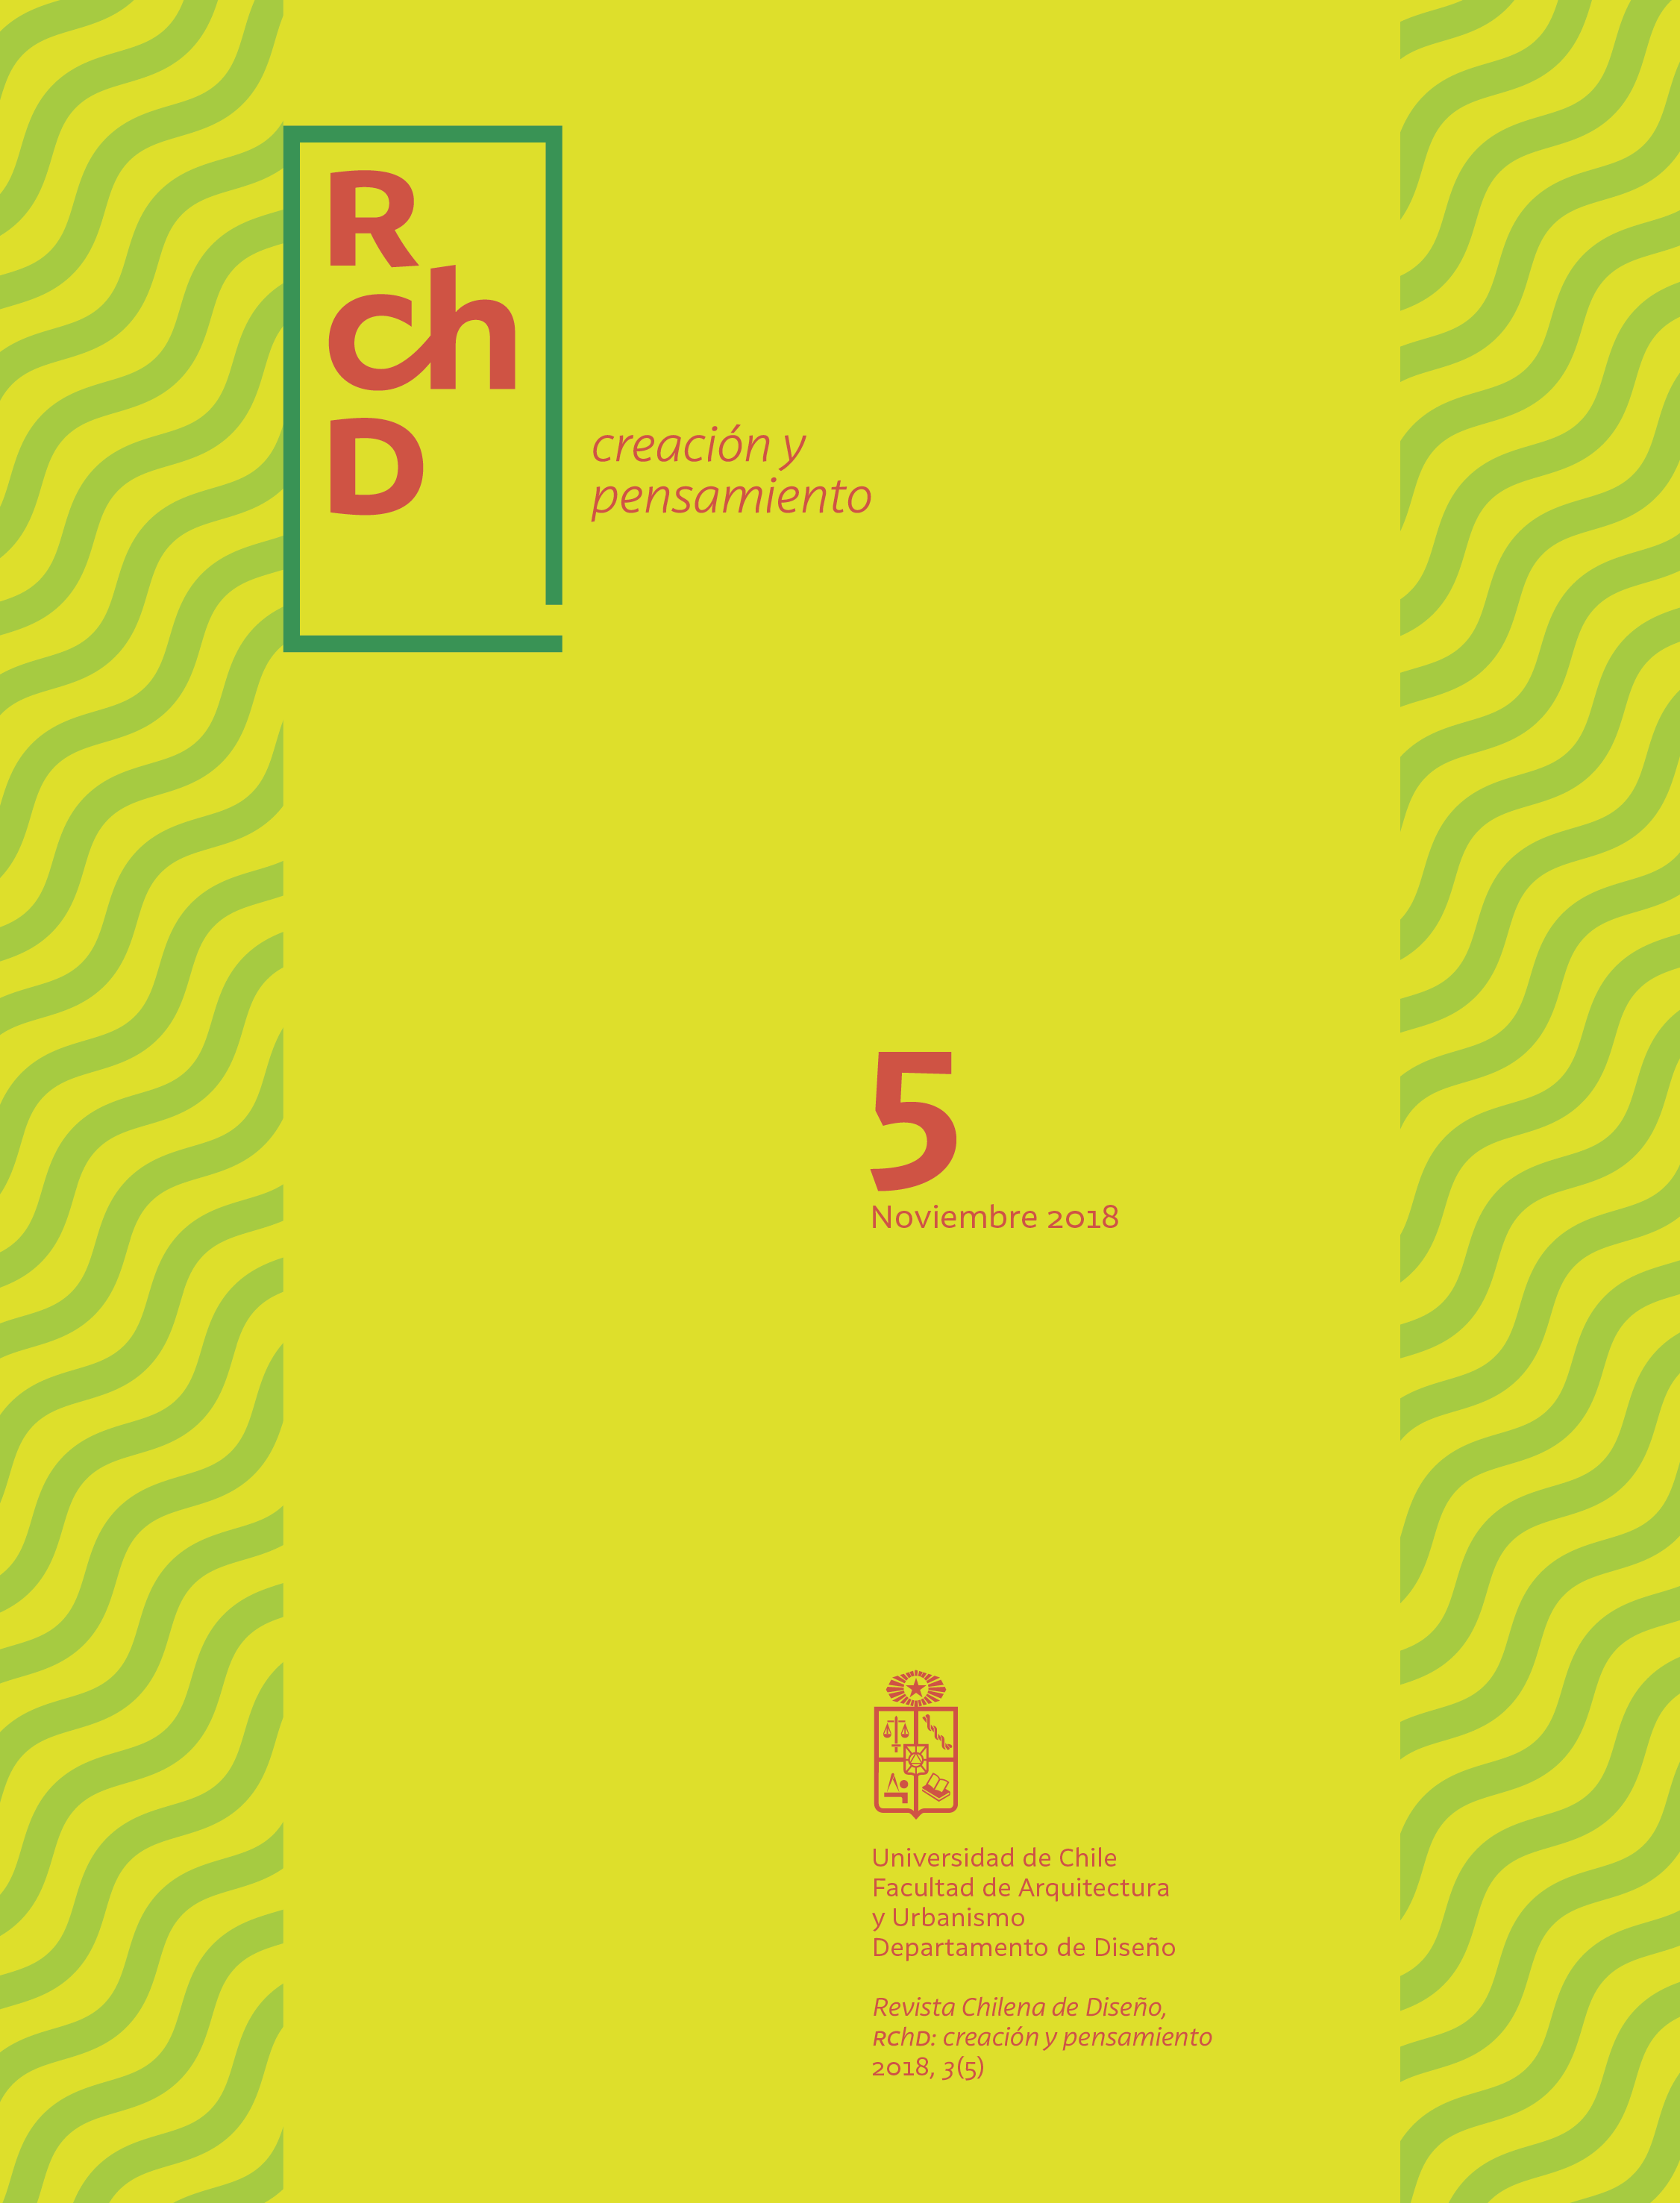 Revista Chilena de Diseño (RChD): creación y pensamiento", volumen 3 número 5.